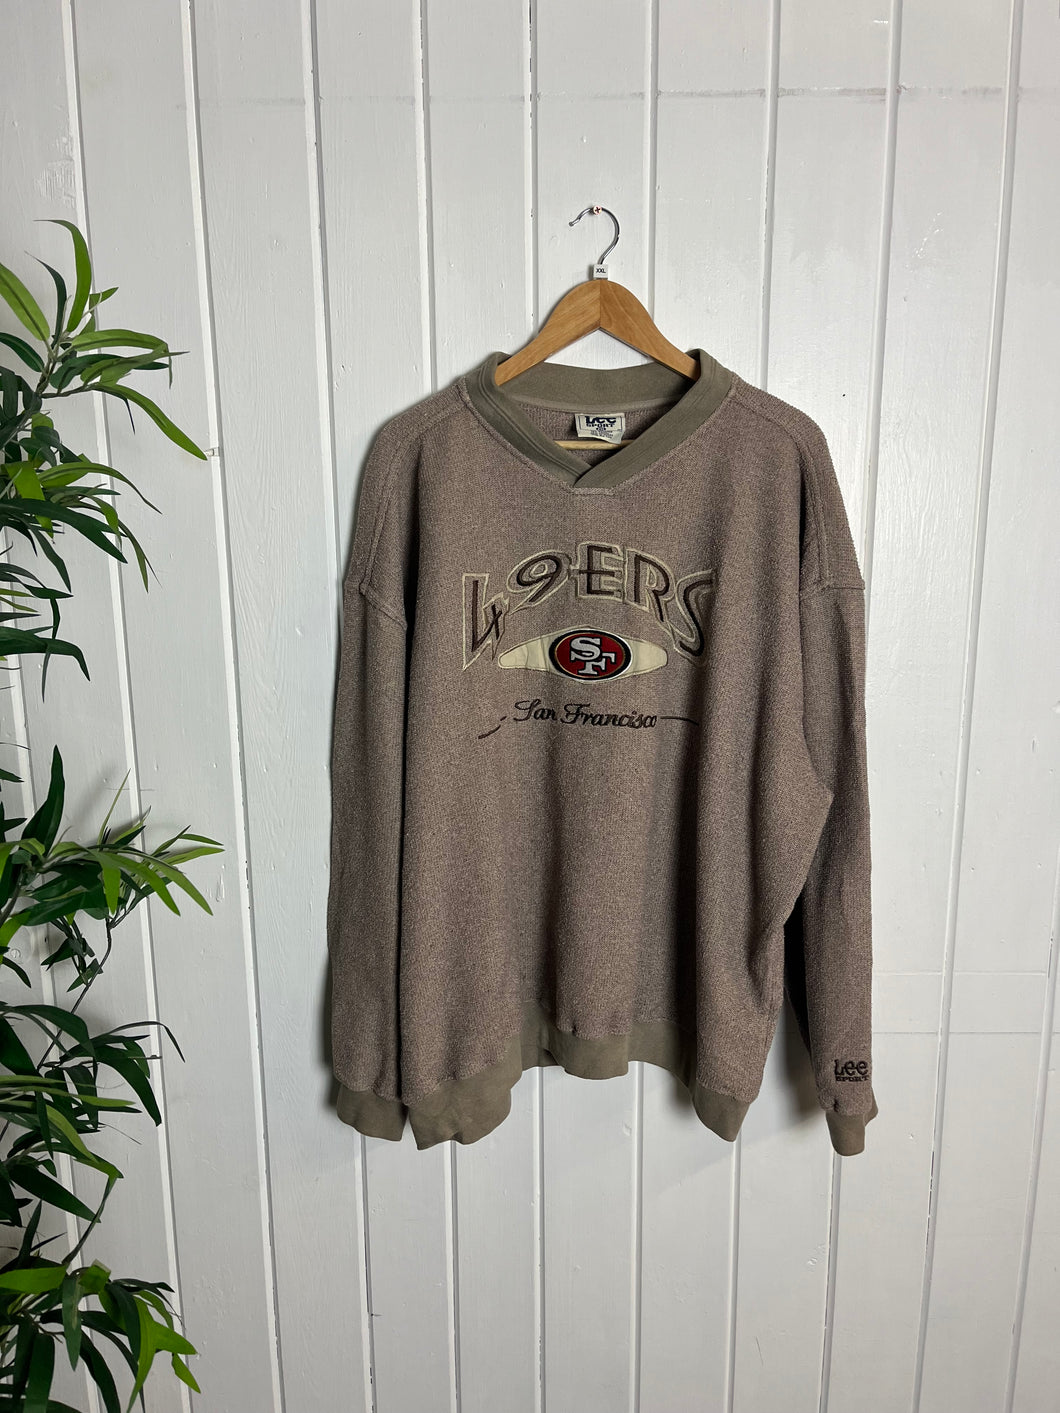 Lee Sport Sweater